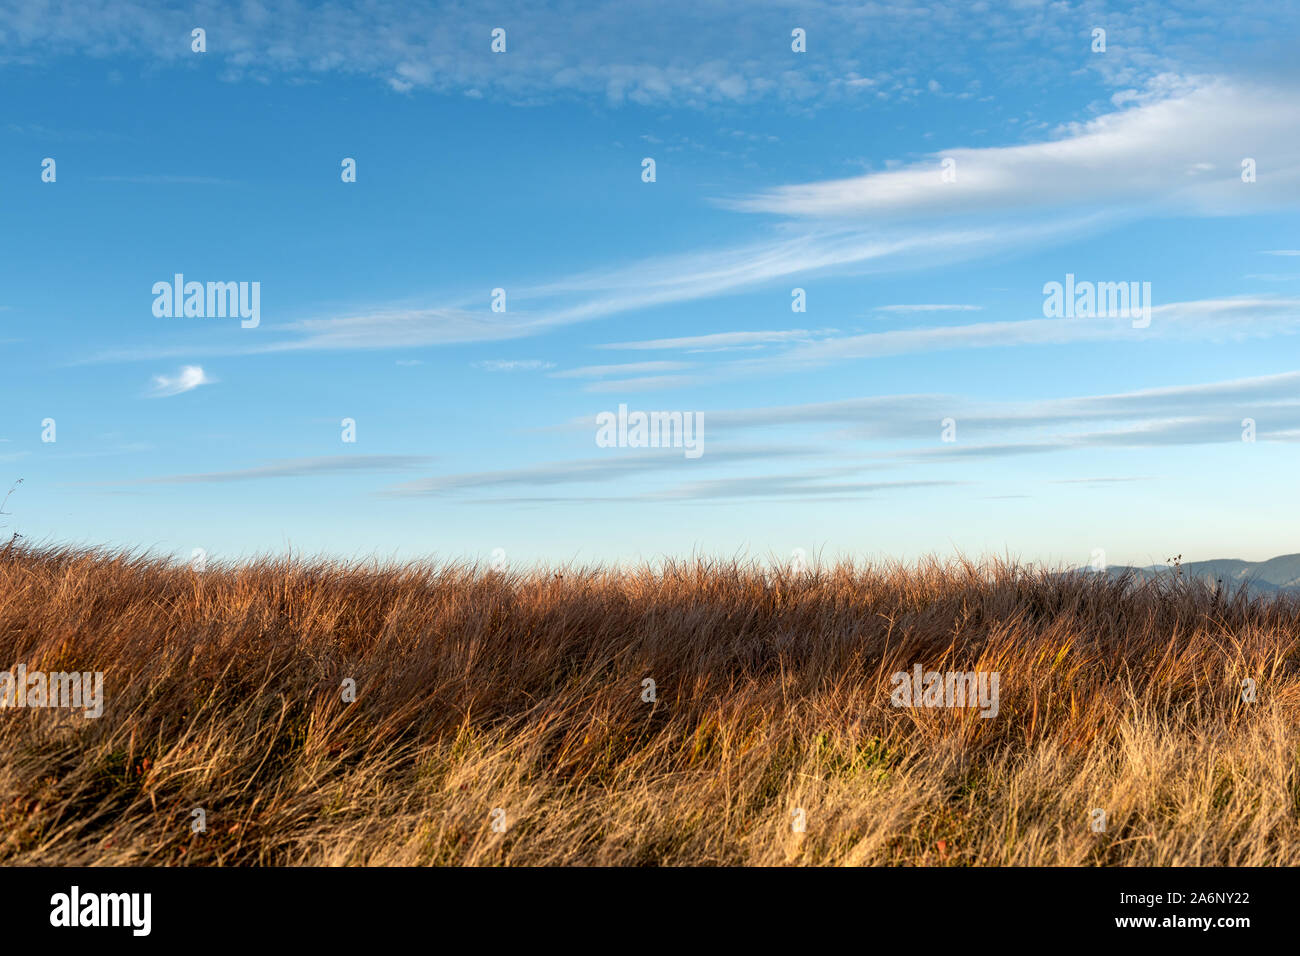 Hohes trockenes Gras sway im Wind auf blauen Himmel Hintergrund Stockfoto